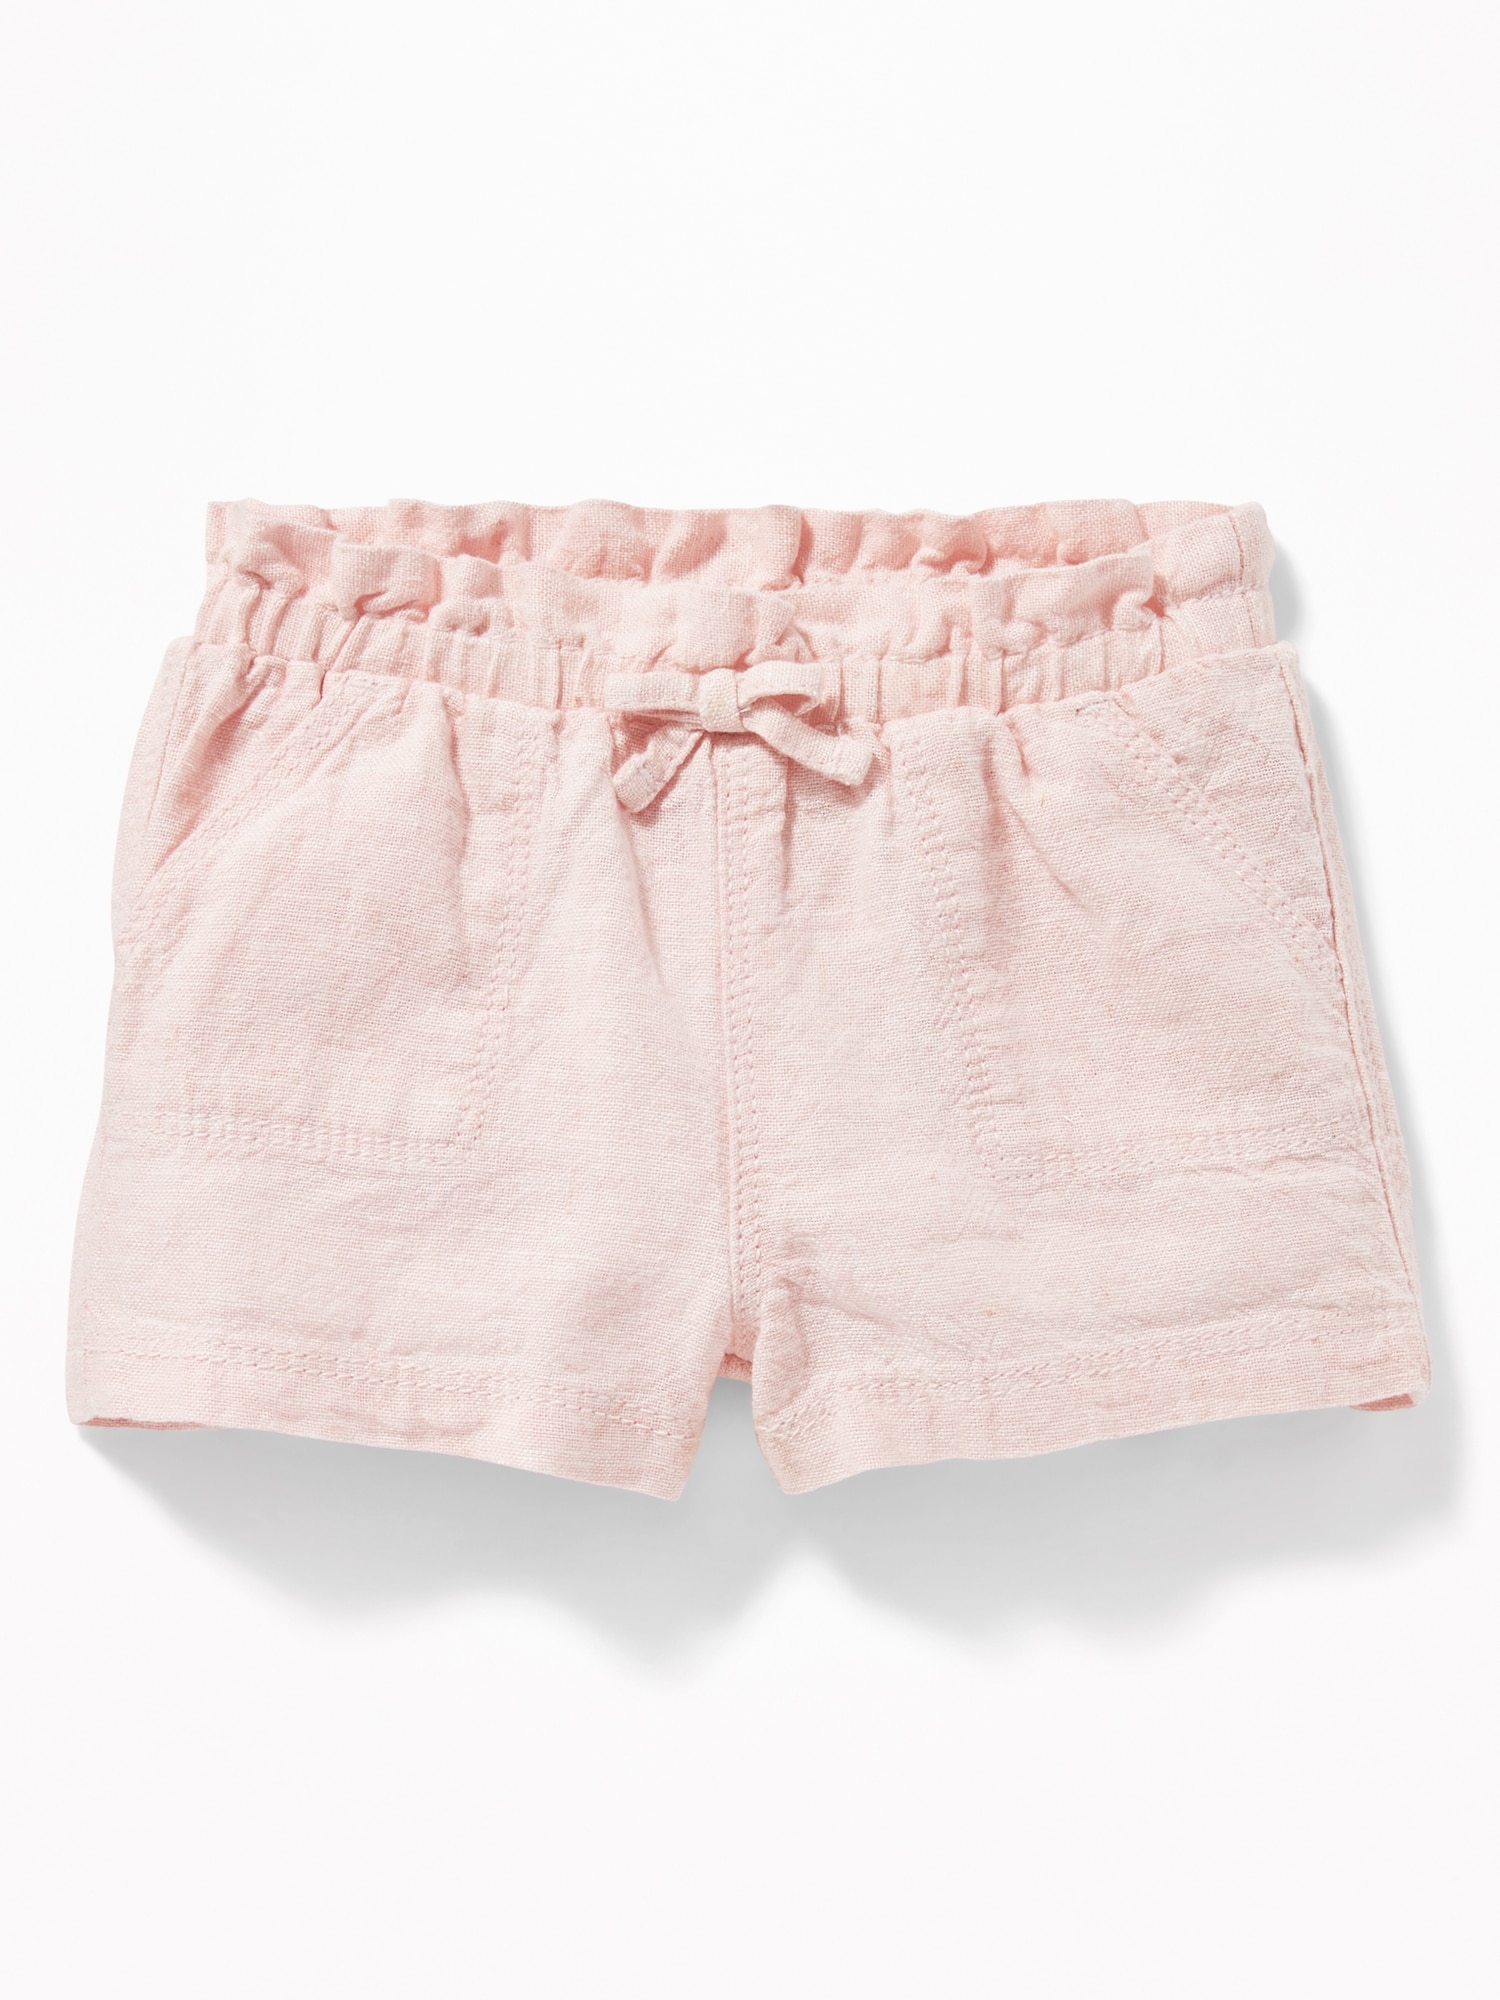 Gap - Pink Linen Shorts Rayon Linen